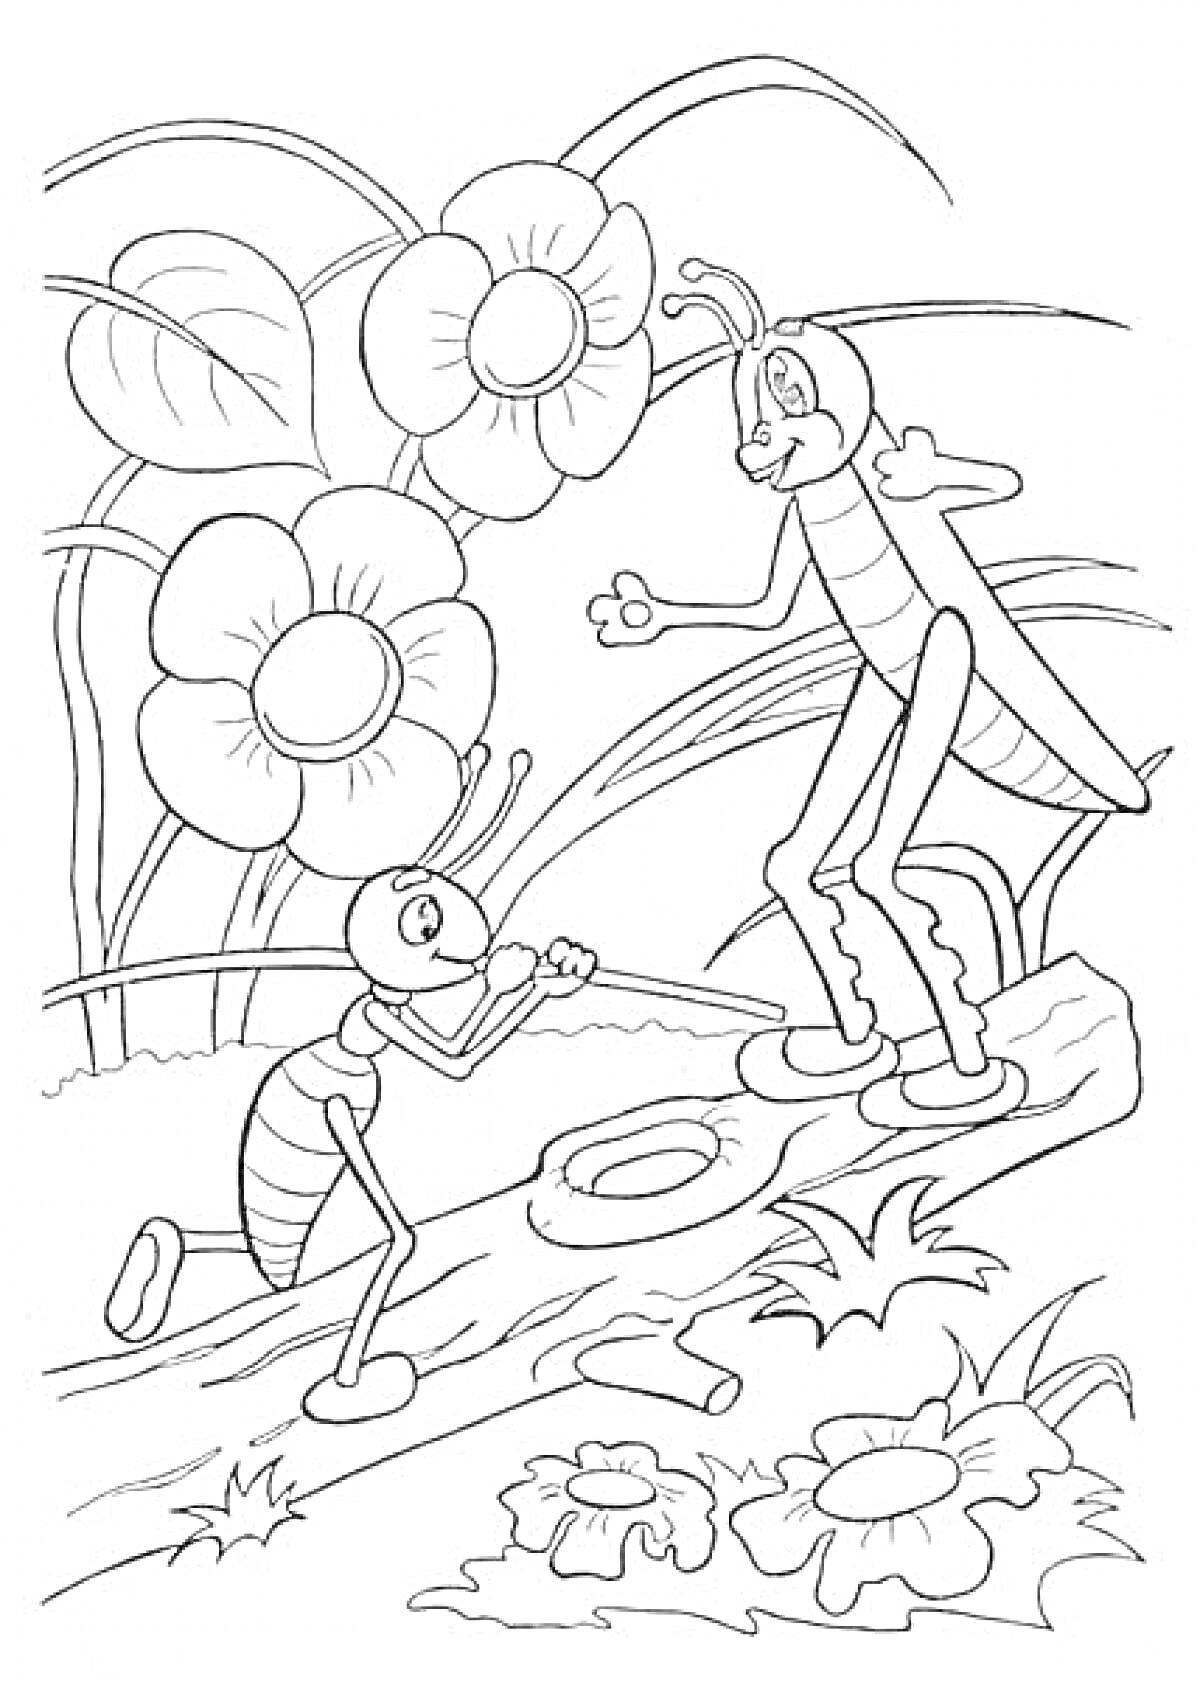 Муравей и Кузнечик на фоне цветов и листьев